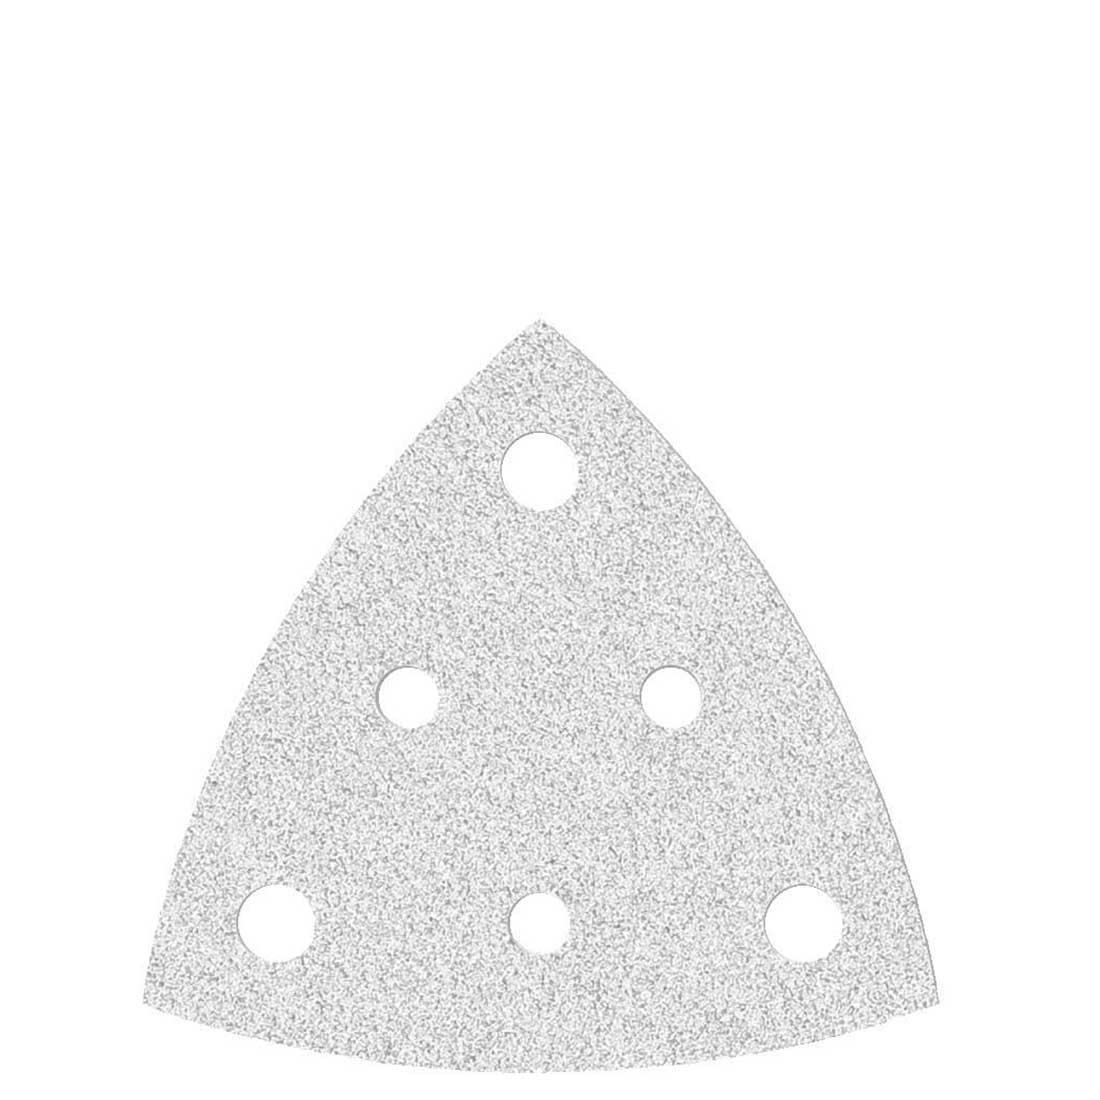 Carte abrasive velcrate MioTools per levigatrici a delta, G40–400, 82 mm / 6 fori / corindone normale con stearato